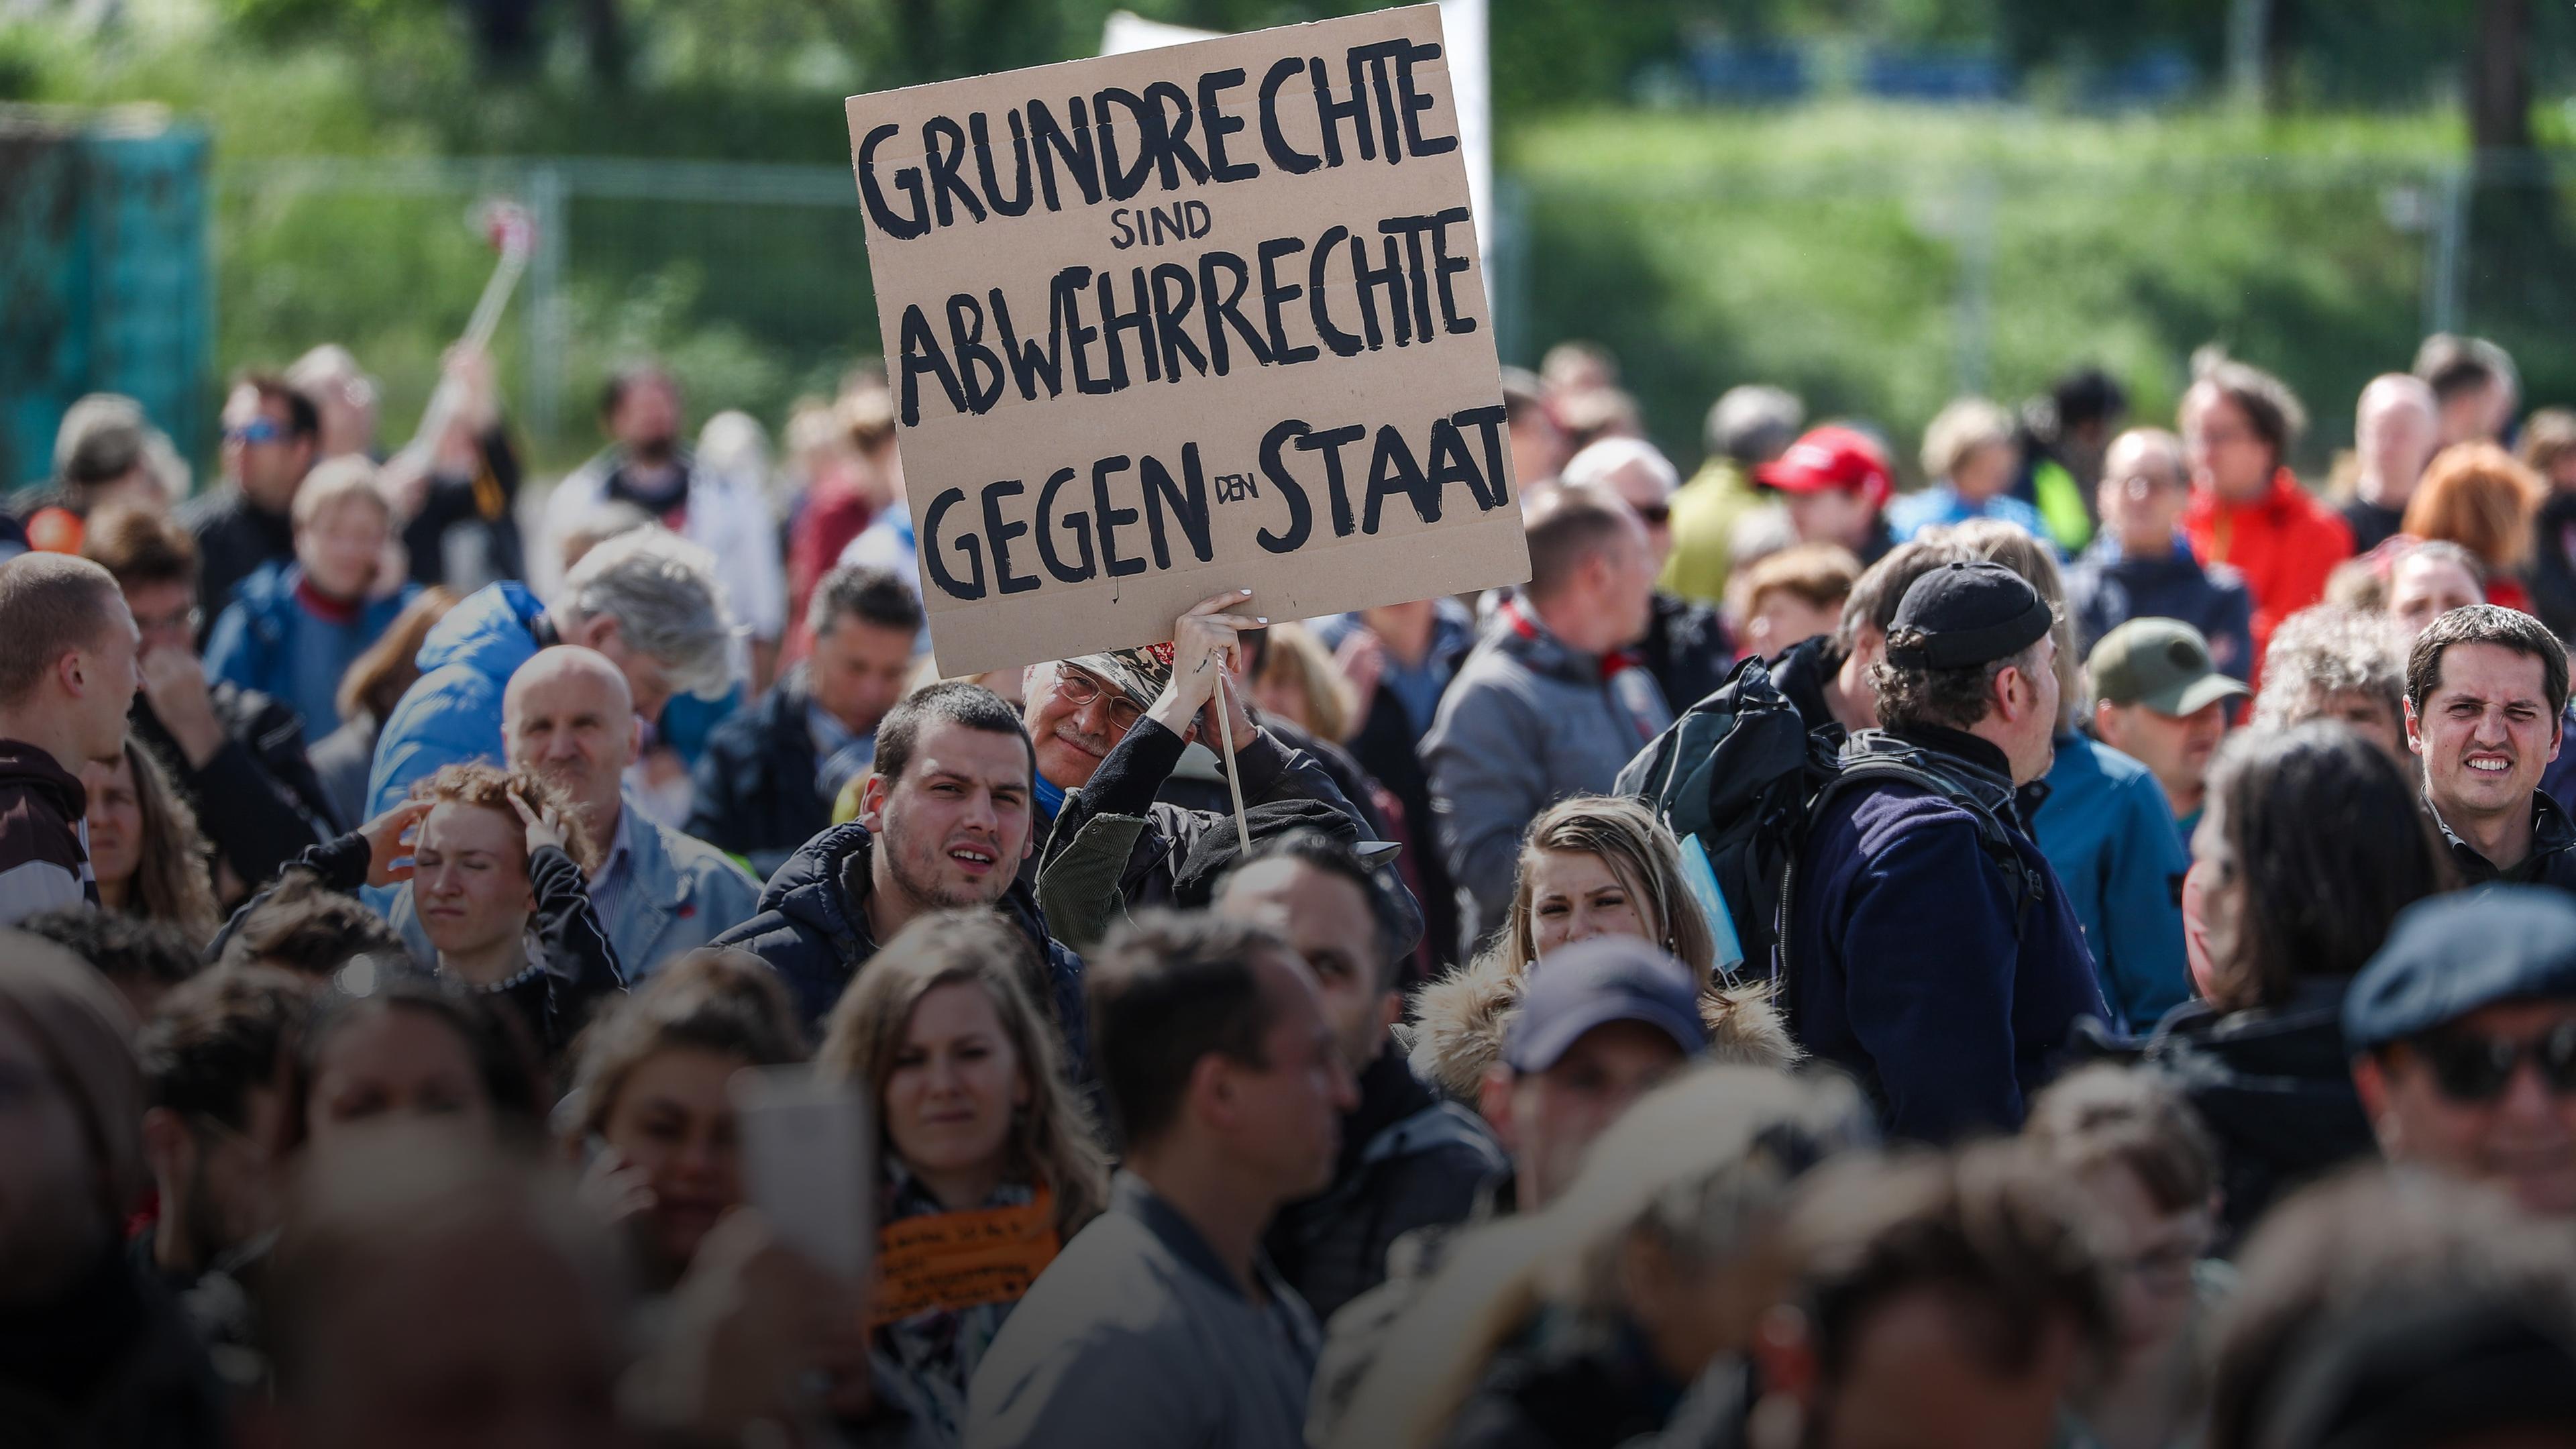 Menschenmasse die in Stuttgart demonstriert, eine Person hält ein Schild mit der Aufschrift: "Grundrecht sind Abwehrrechte gegen den Staat"